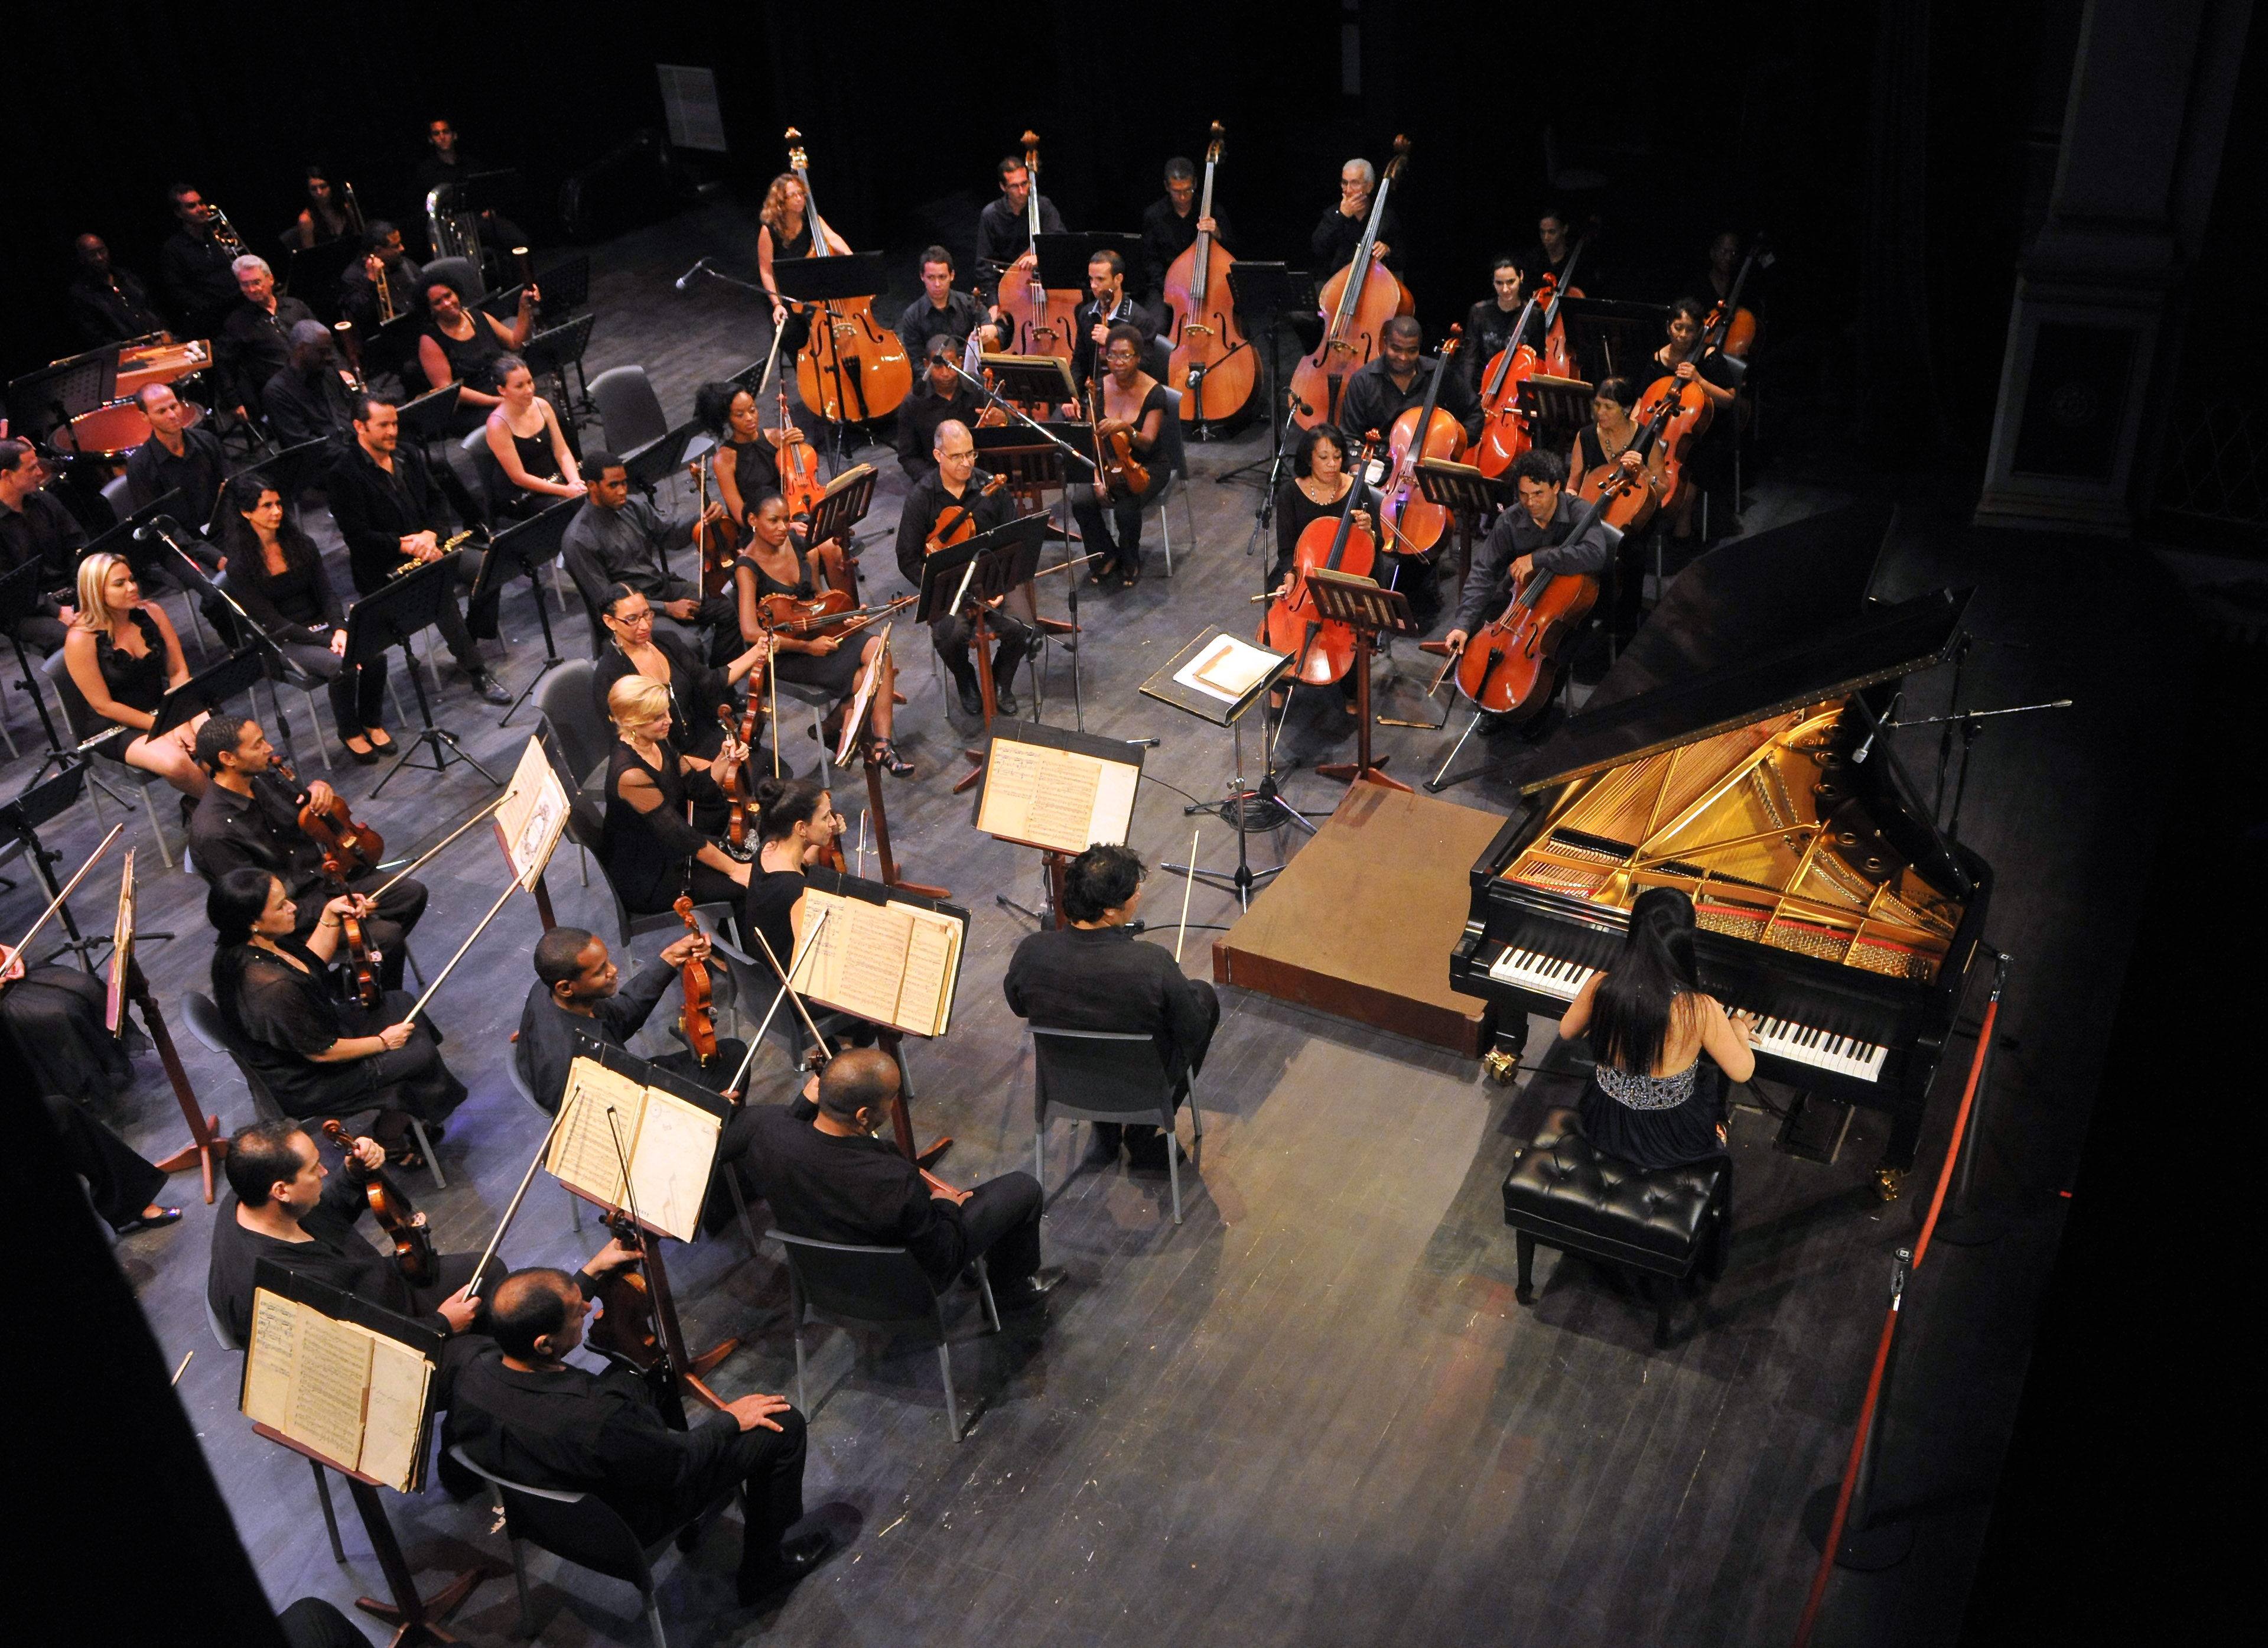 El evento se desarrolla con los auspicios de la Oficina del Historiador de la Ciudad y es considerado un punto de convergencia para pianistas emergentes de todo el mundo.